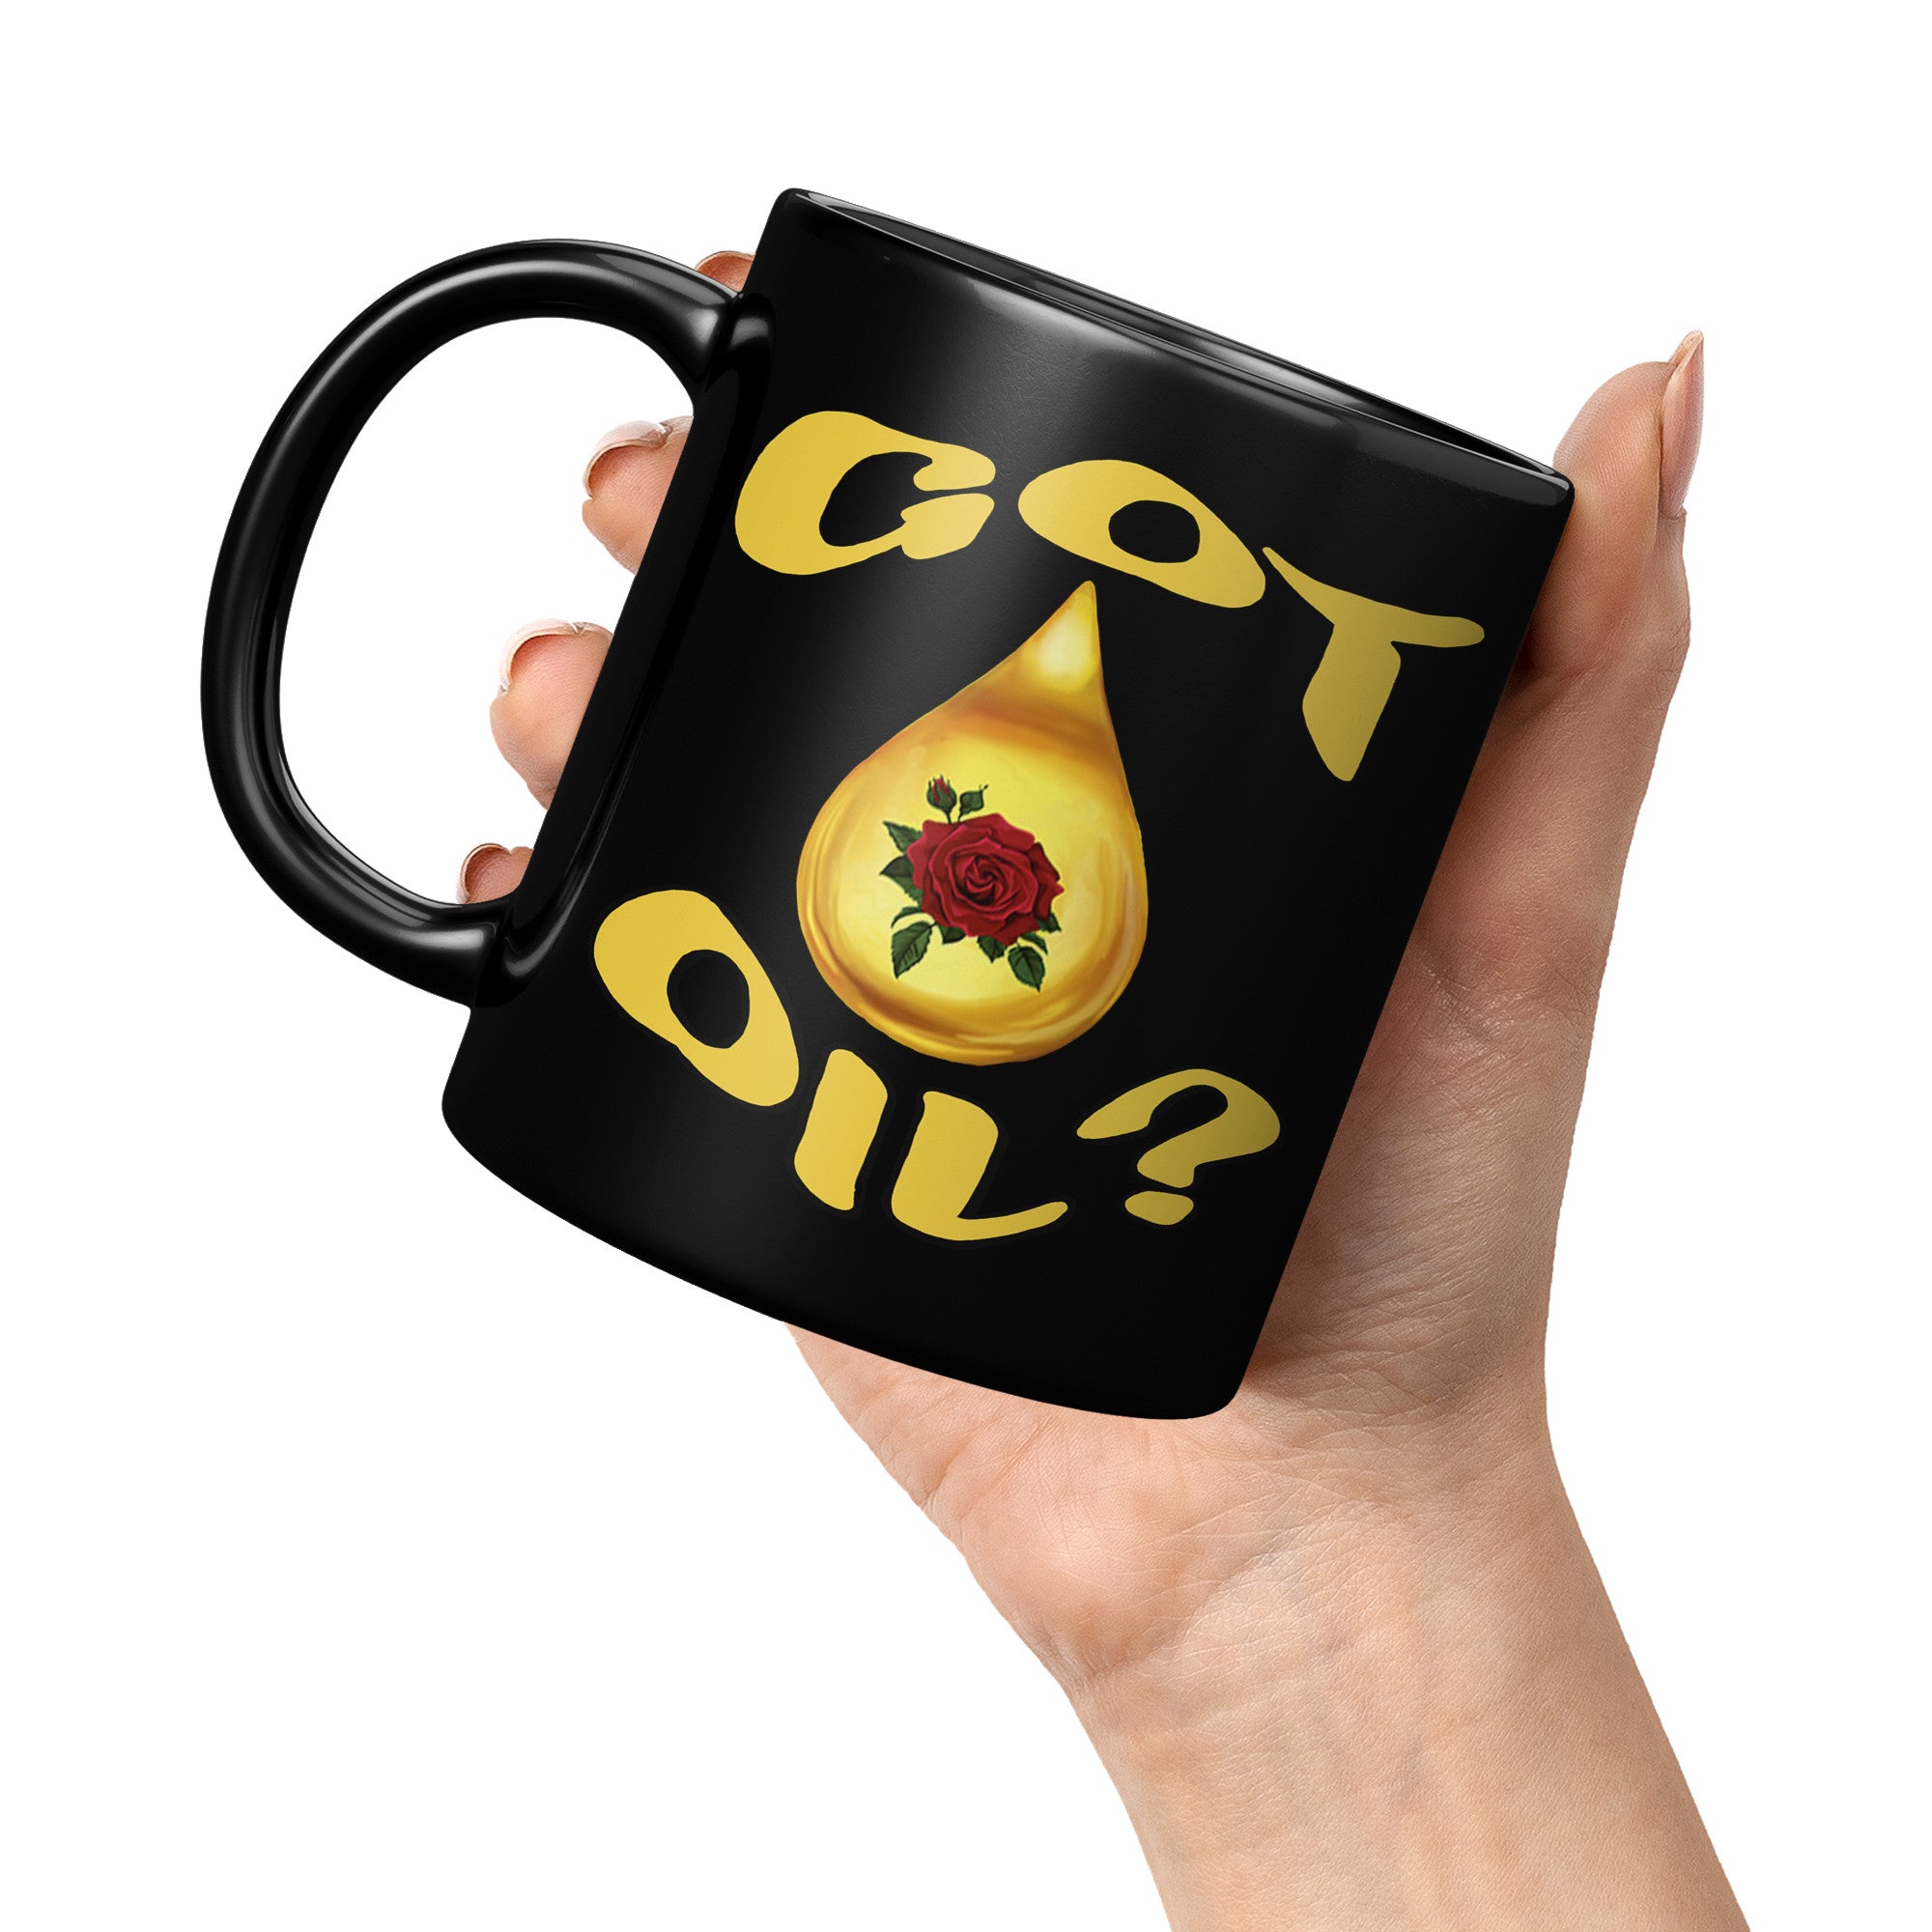 GOT OIL?